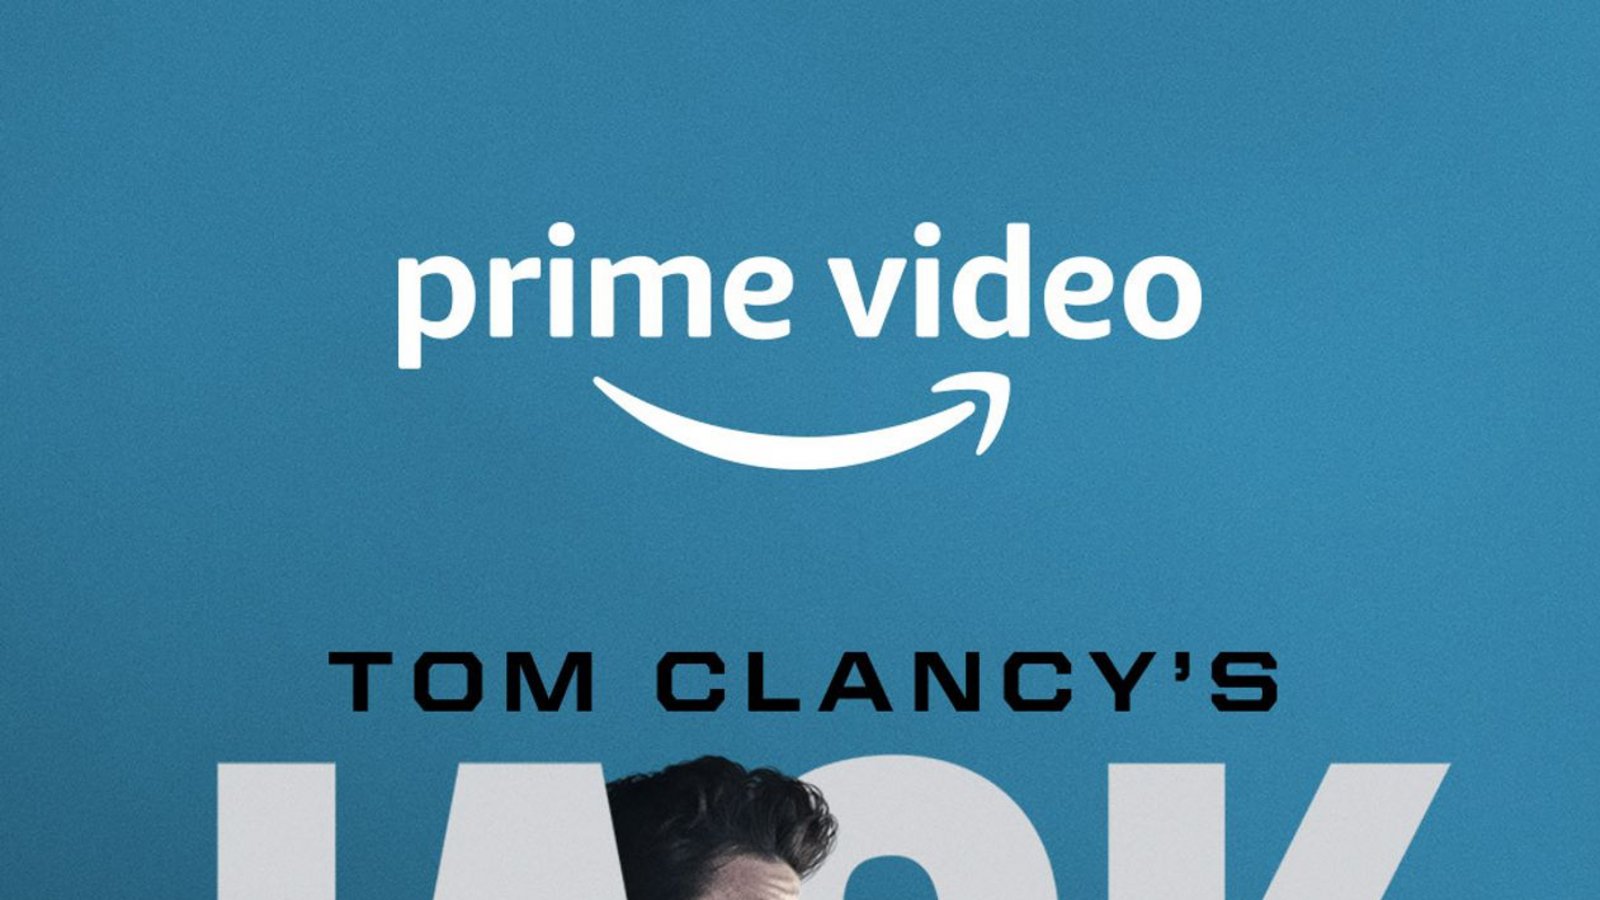 7. Tom Clancy’s Jack Ryan: Der Mann, der in Tom Clancys Bestsellern die Hauptrolle spielt, arbeitet nicht für den MI6 oder KGB, sondern die CIA, doch auch die dritte Staffel der Thrillerserie wird von den Folgen des Kalten Kriegs überschattet. John Krasinski ist wieder Jack Ryan. Diesmal bekommt er es mit Nina Hoss zu tun. Amazon Prime, 21. DezemberFoto: Prime Video/Amazon Studios